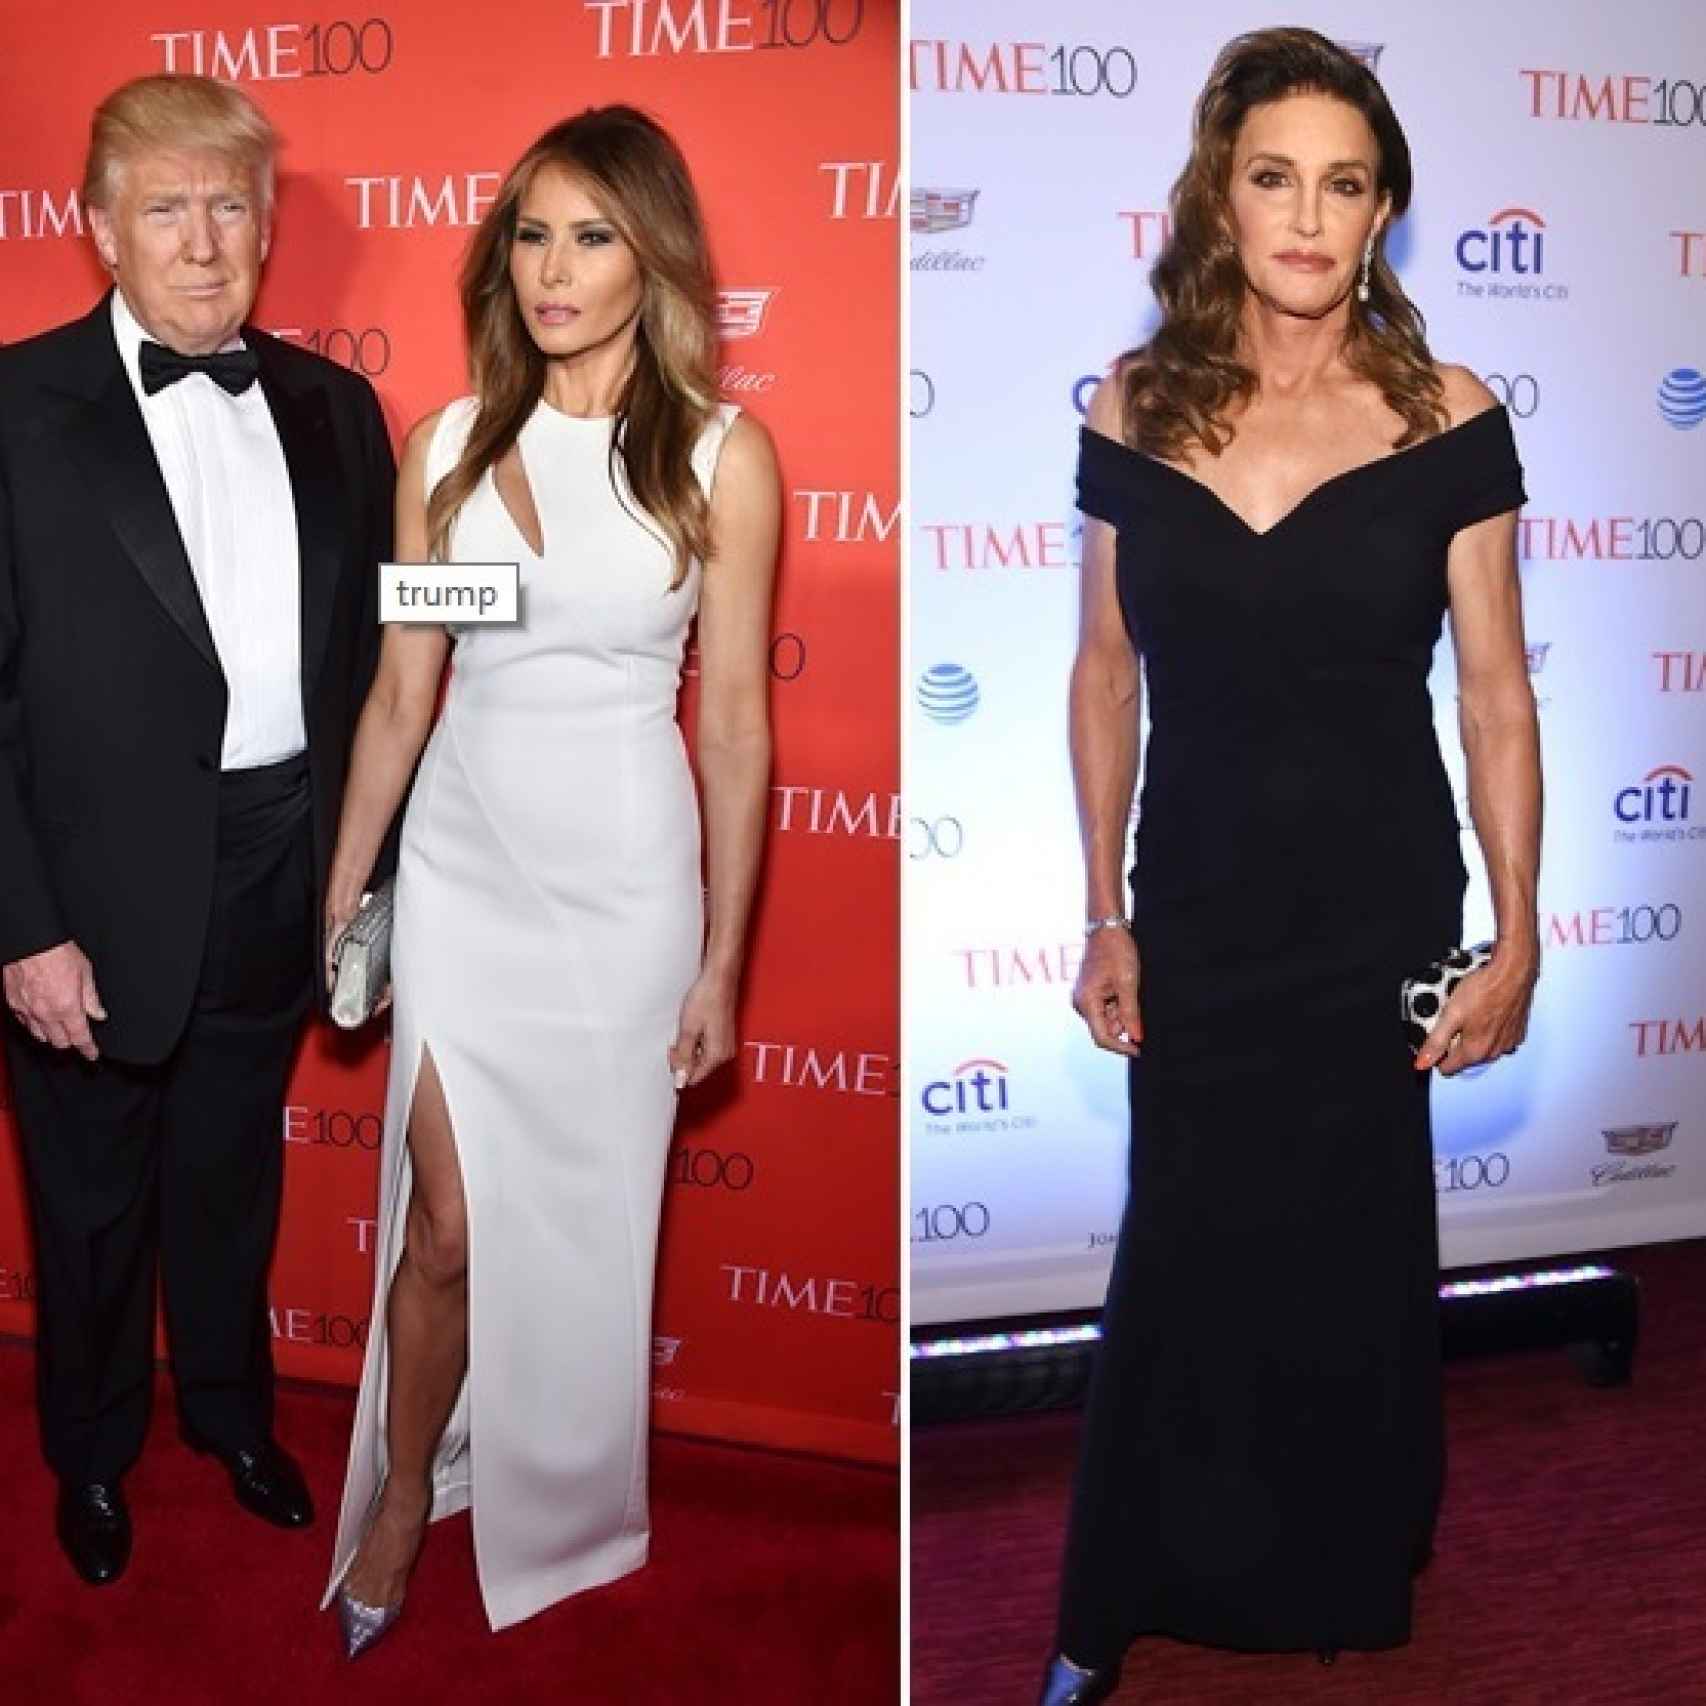 Donald con su mujer Melania y Caitlyn Jenner en la TIME 100 Gala